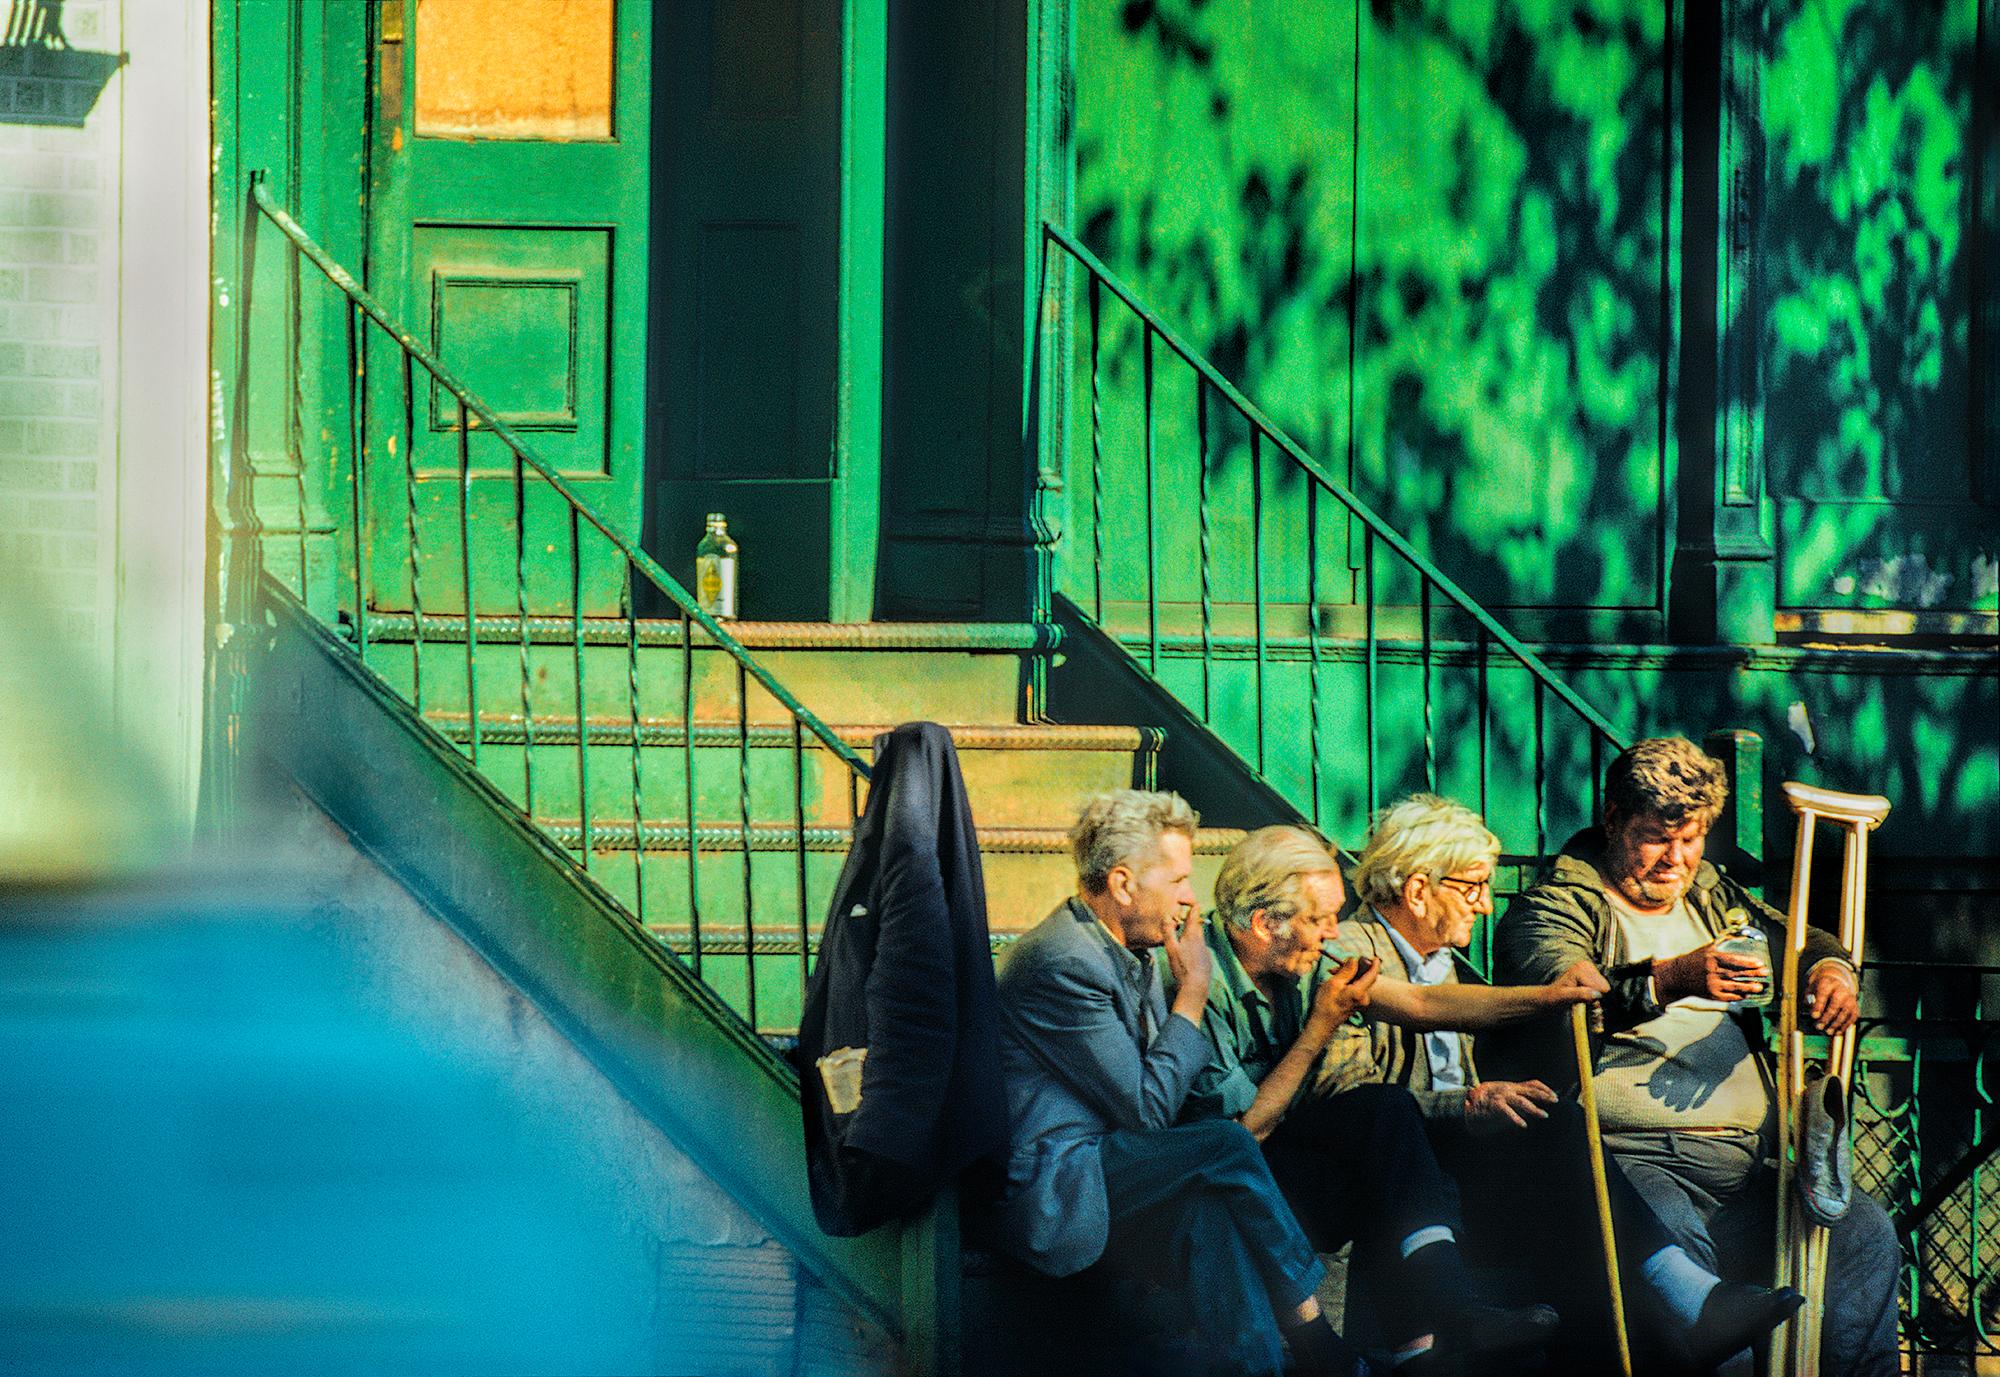 Color Photograph Mitchell Funk - Bums, Tramps fument et boivent au mur bleu vert de l'East Village